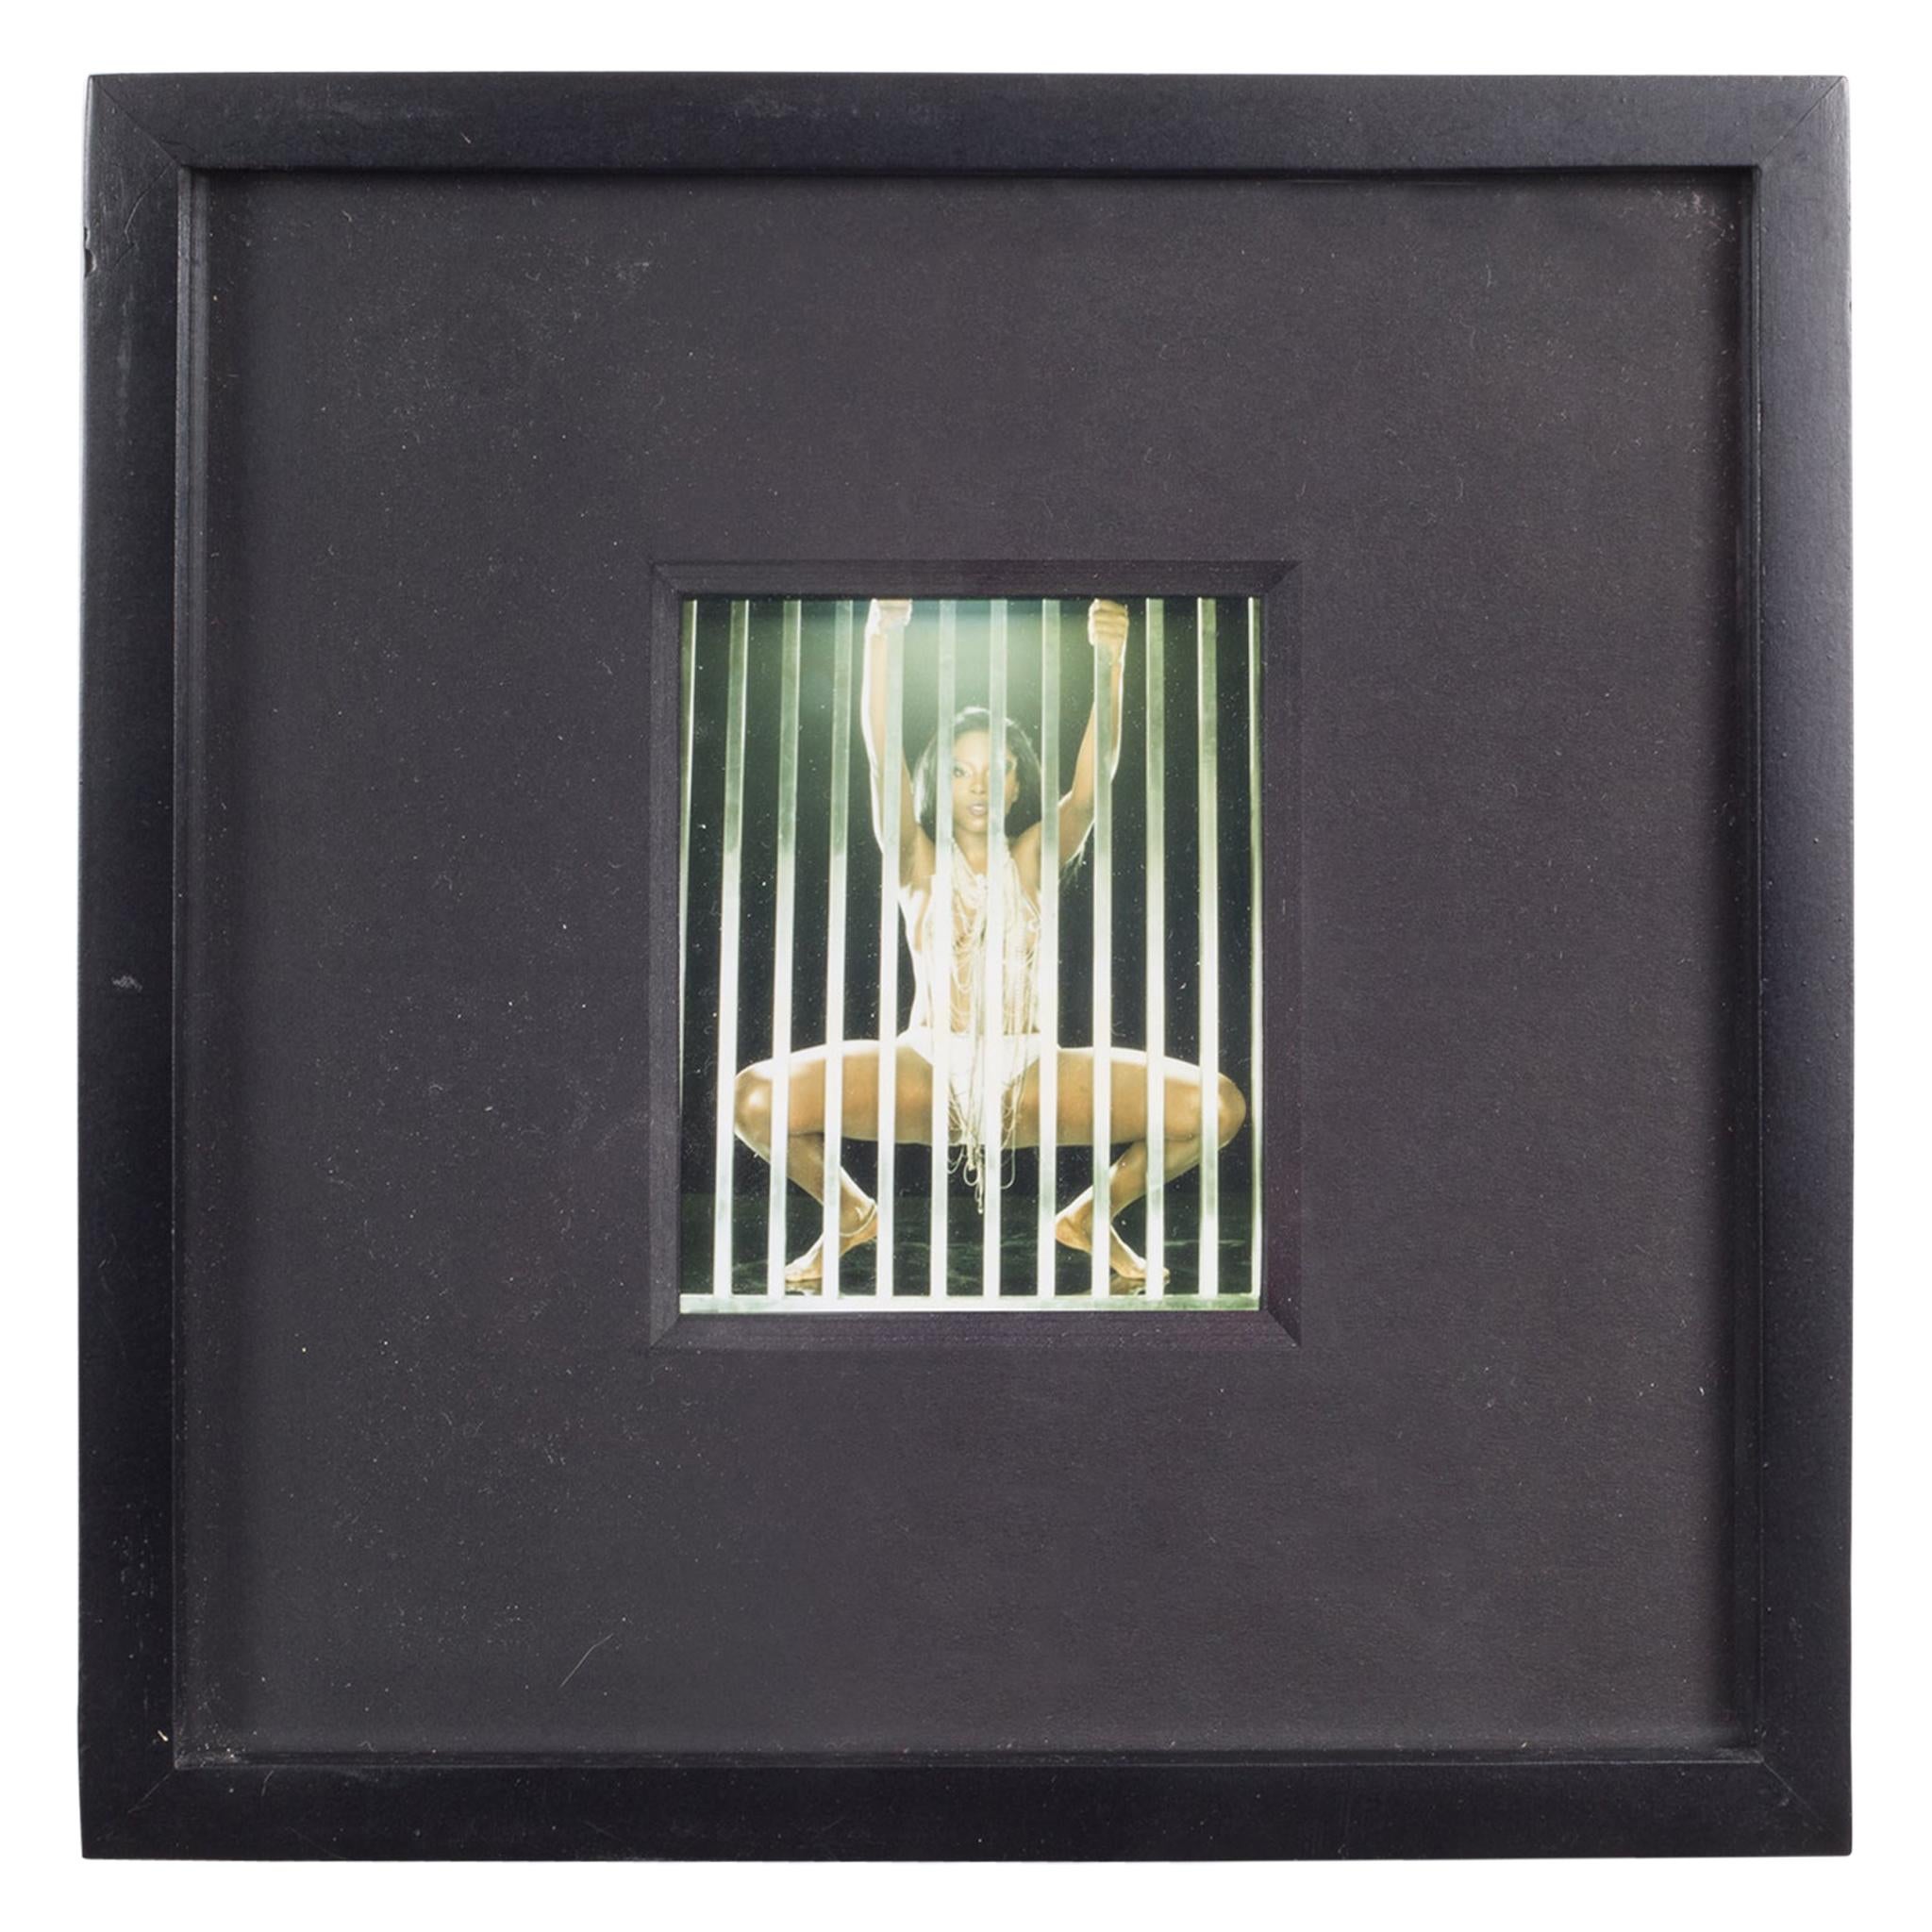 Polaroid Test Image #38 by Denise Tarantino for Dah Len Studios